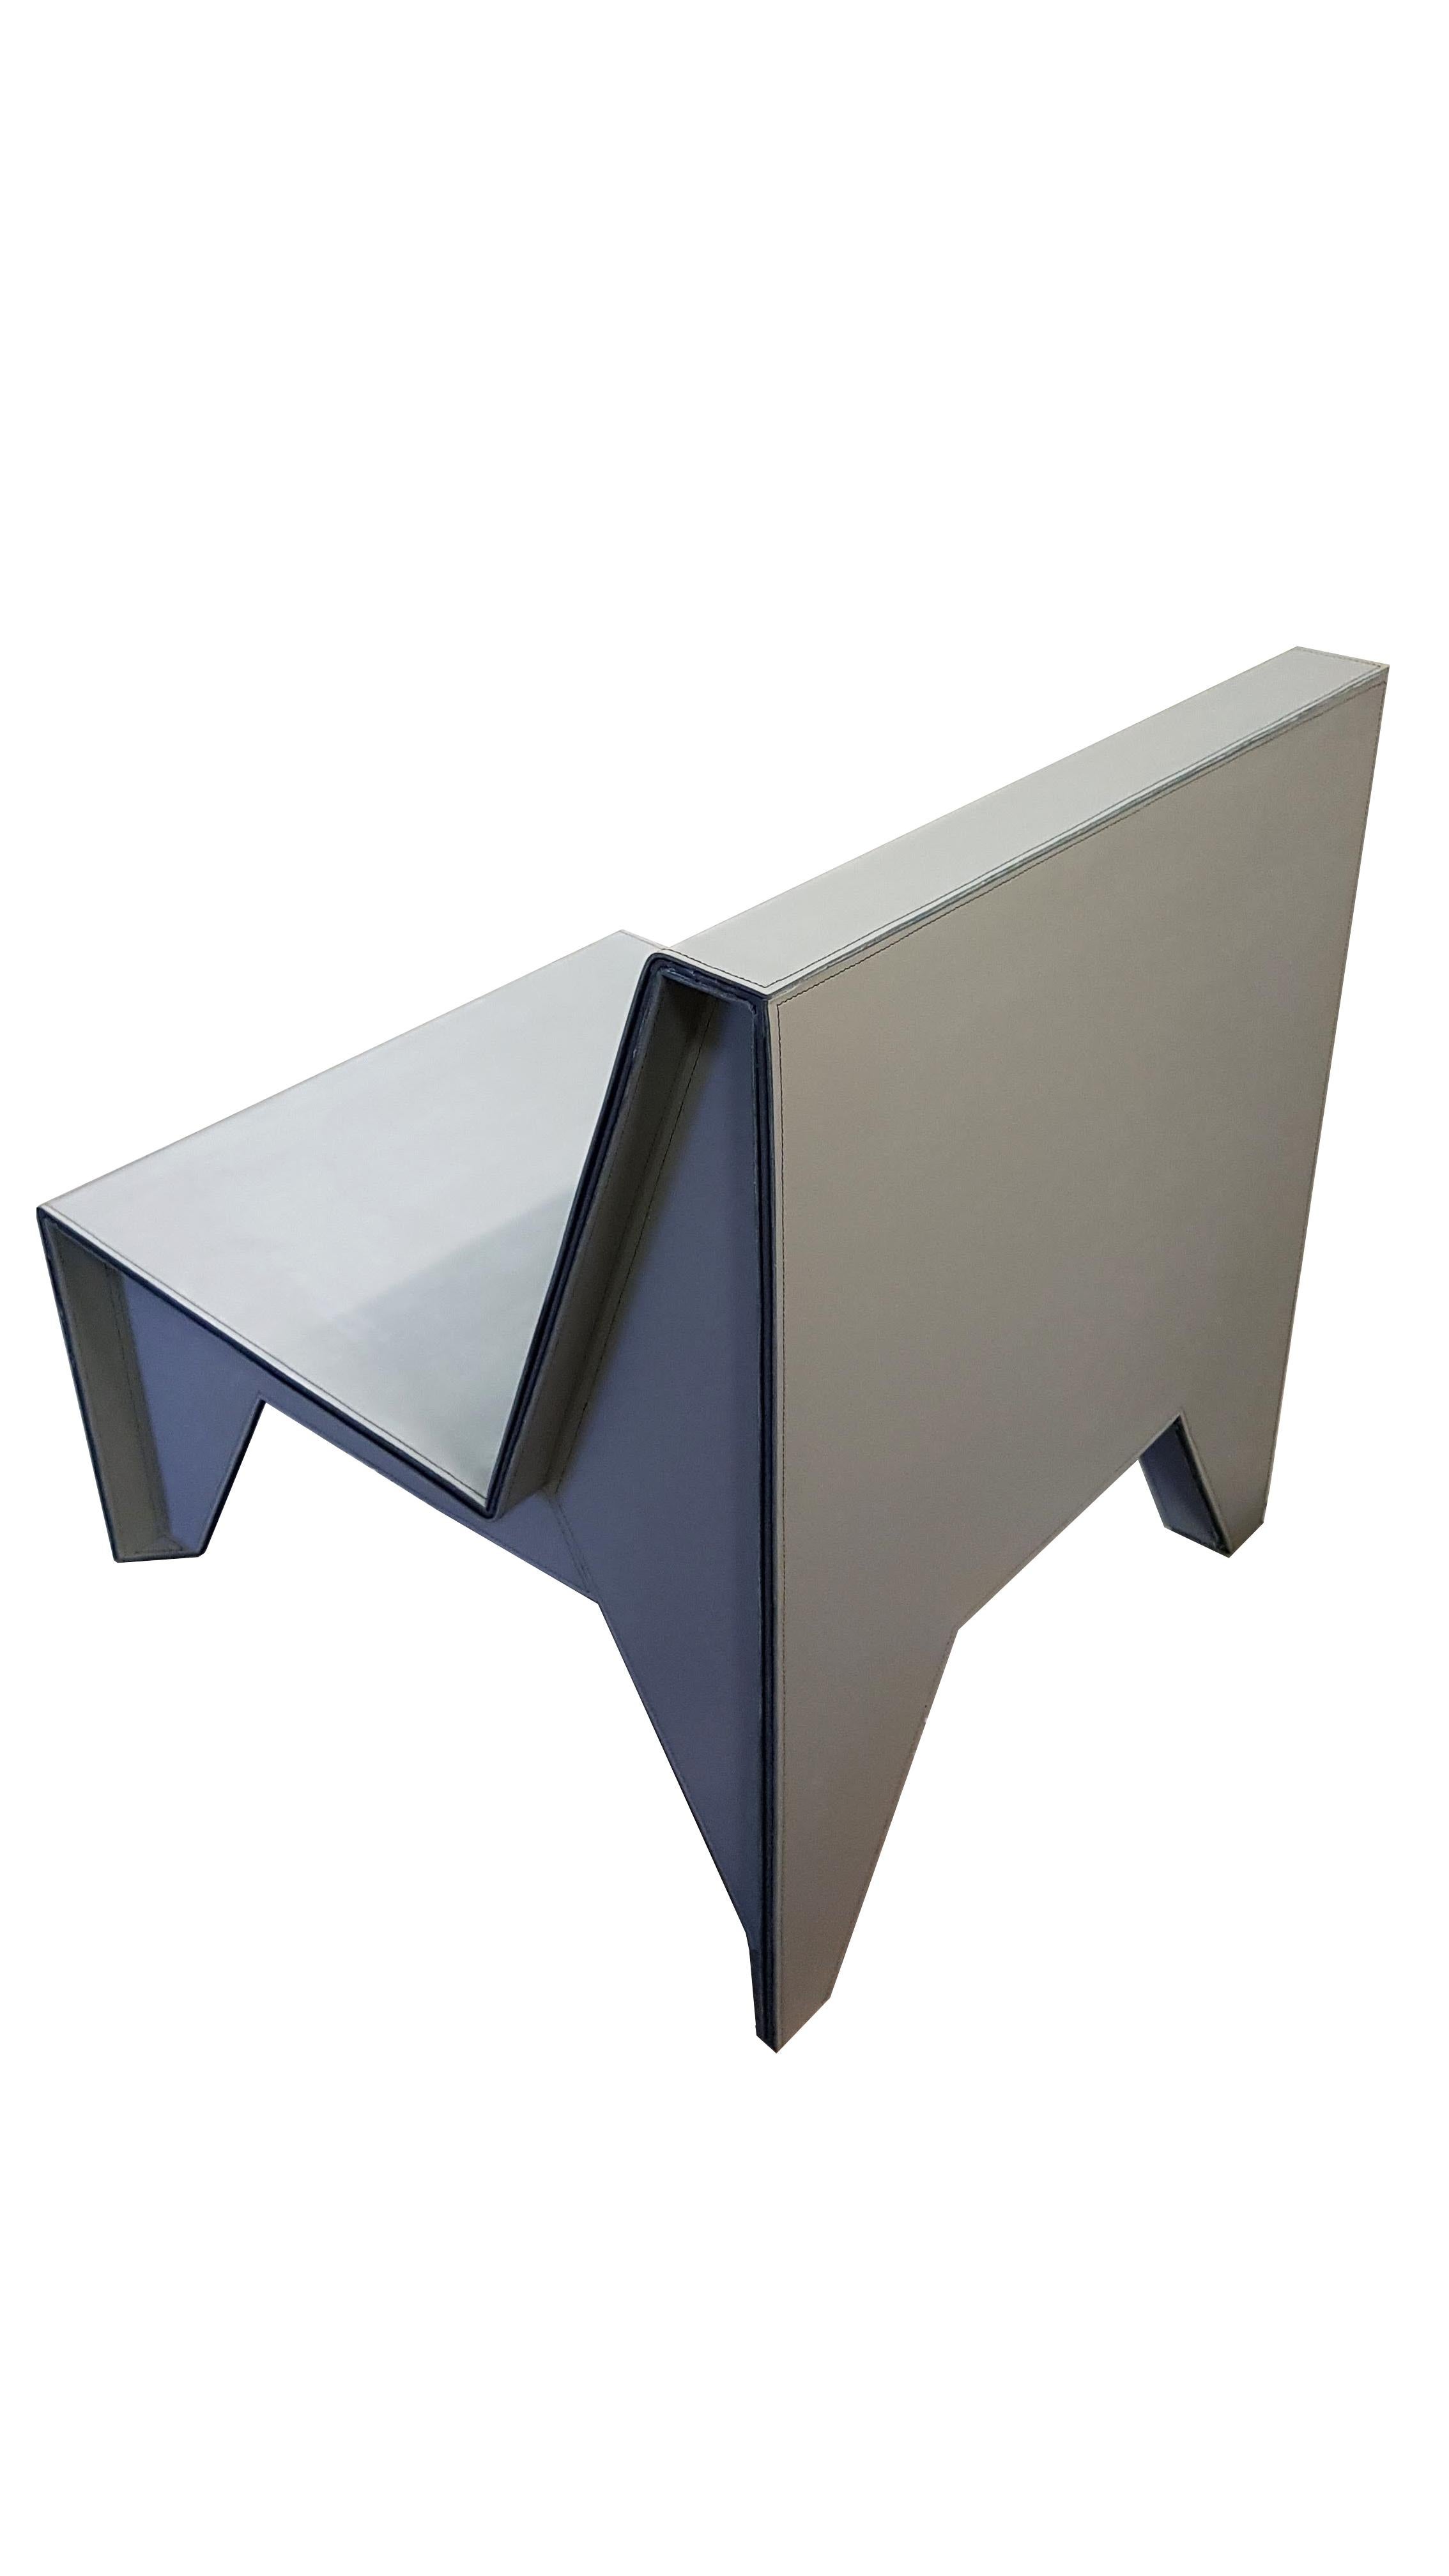 La chaise IDRA Lounge est un exemple étonnant de design minimaliste, créé par le très talentueux Olavo Machado Neto. Les recherches approfondies de Machado Neto sur les formes et les matériaux ont abouti à la création de ce magnifique